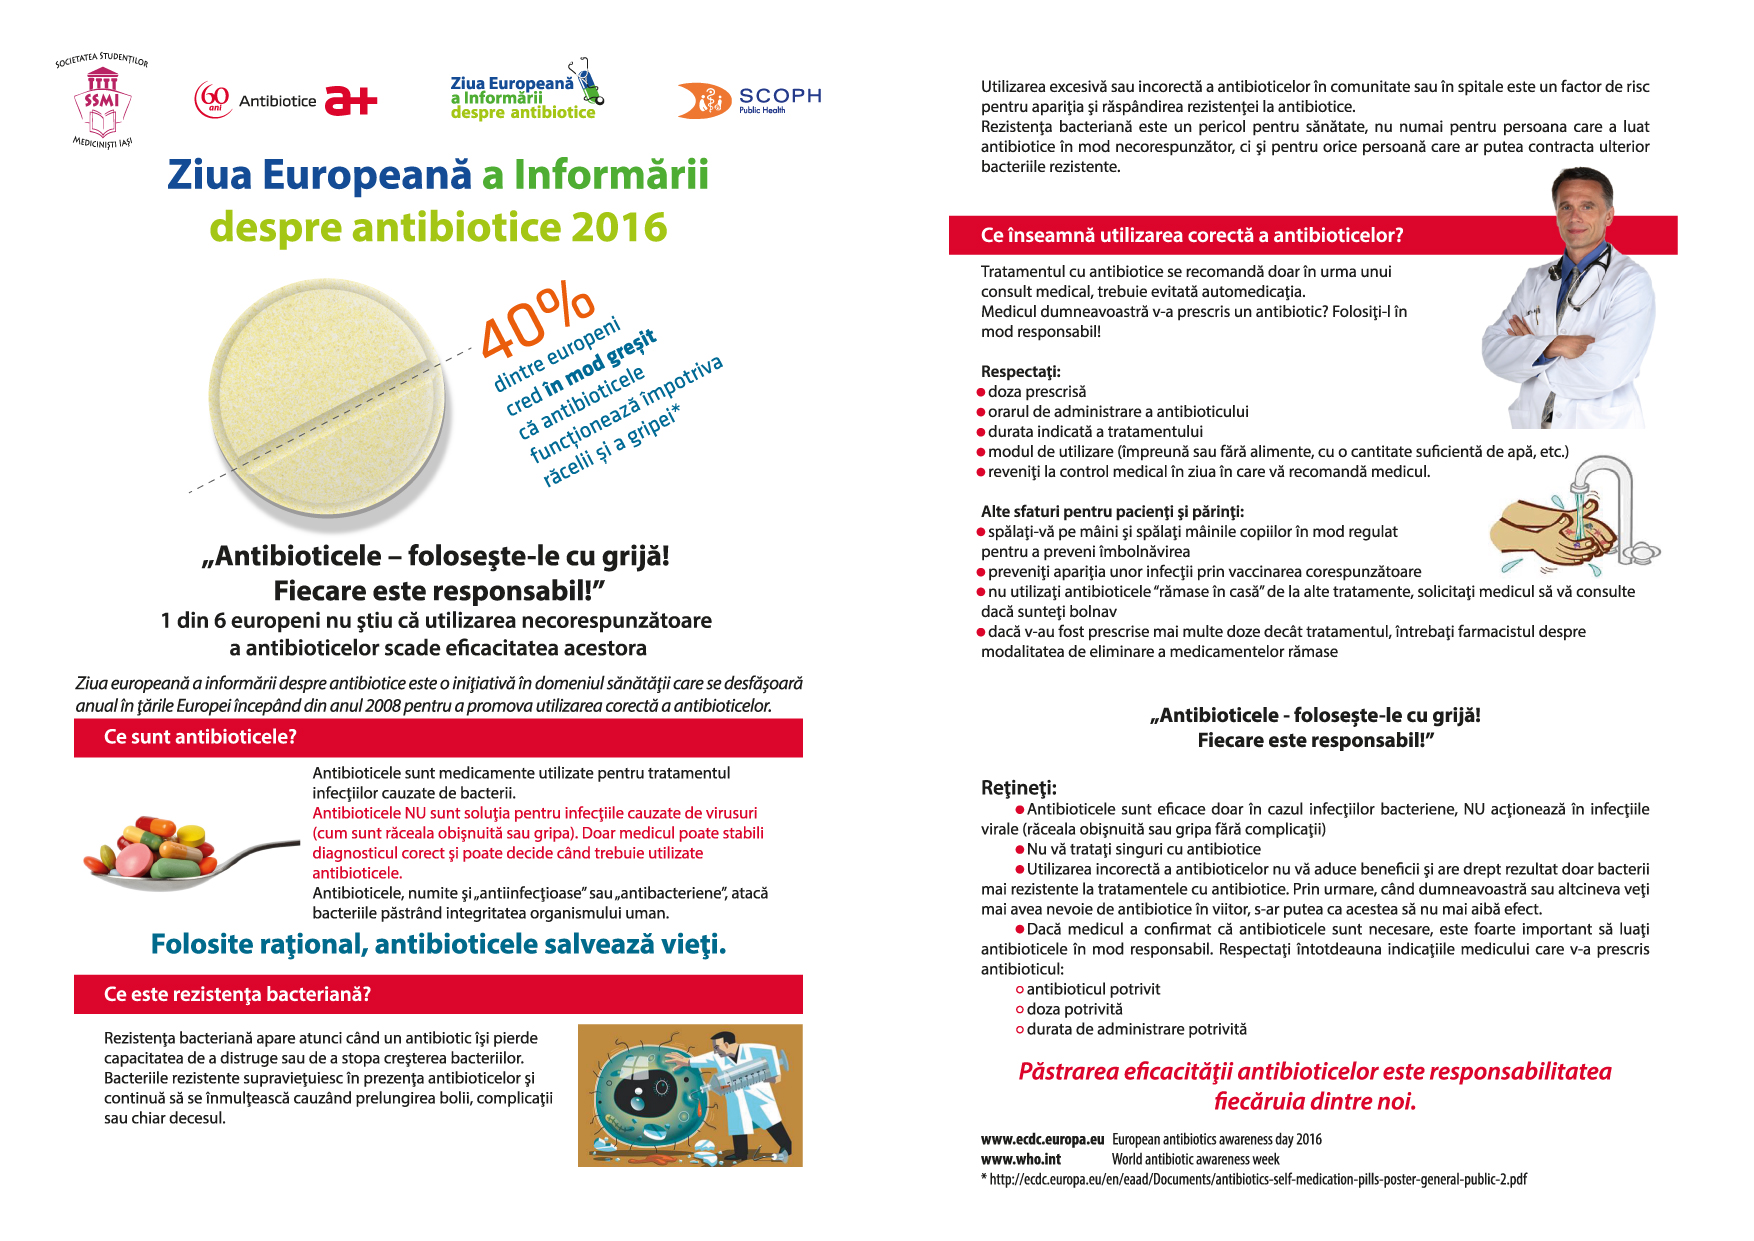 18.11 Ziua EU Info Antibiotice 2016 - leaflet